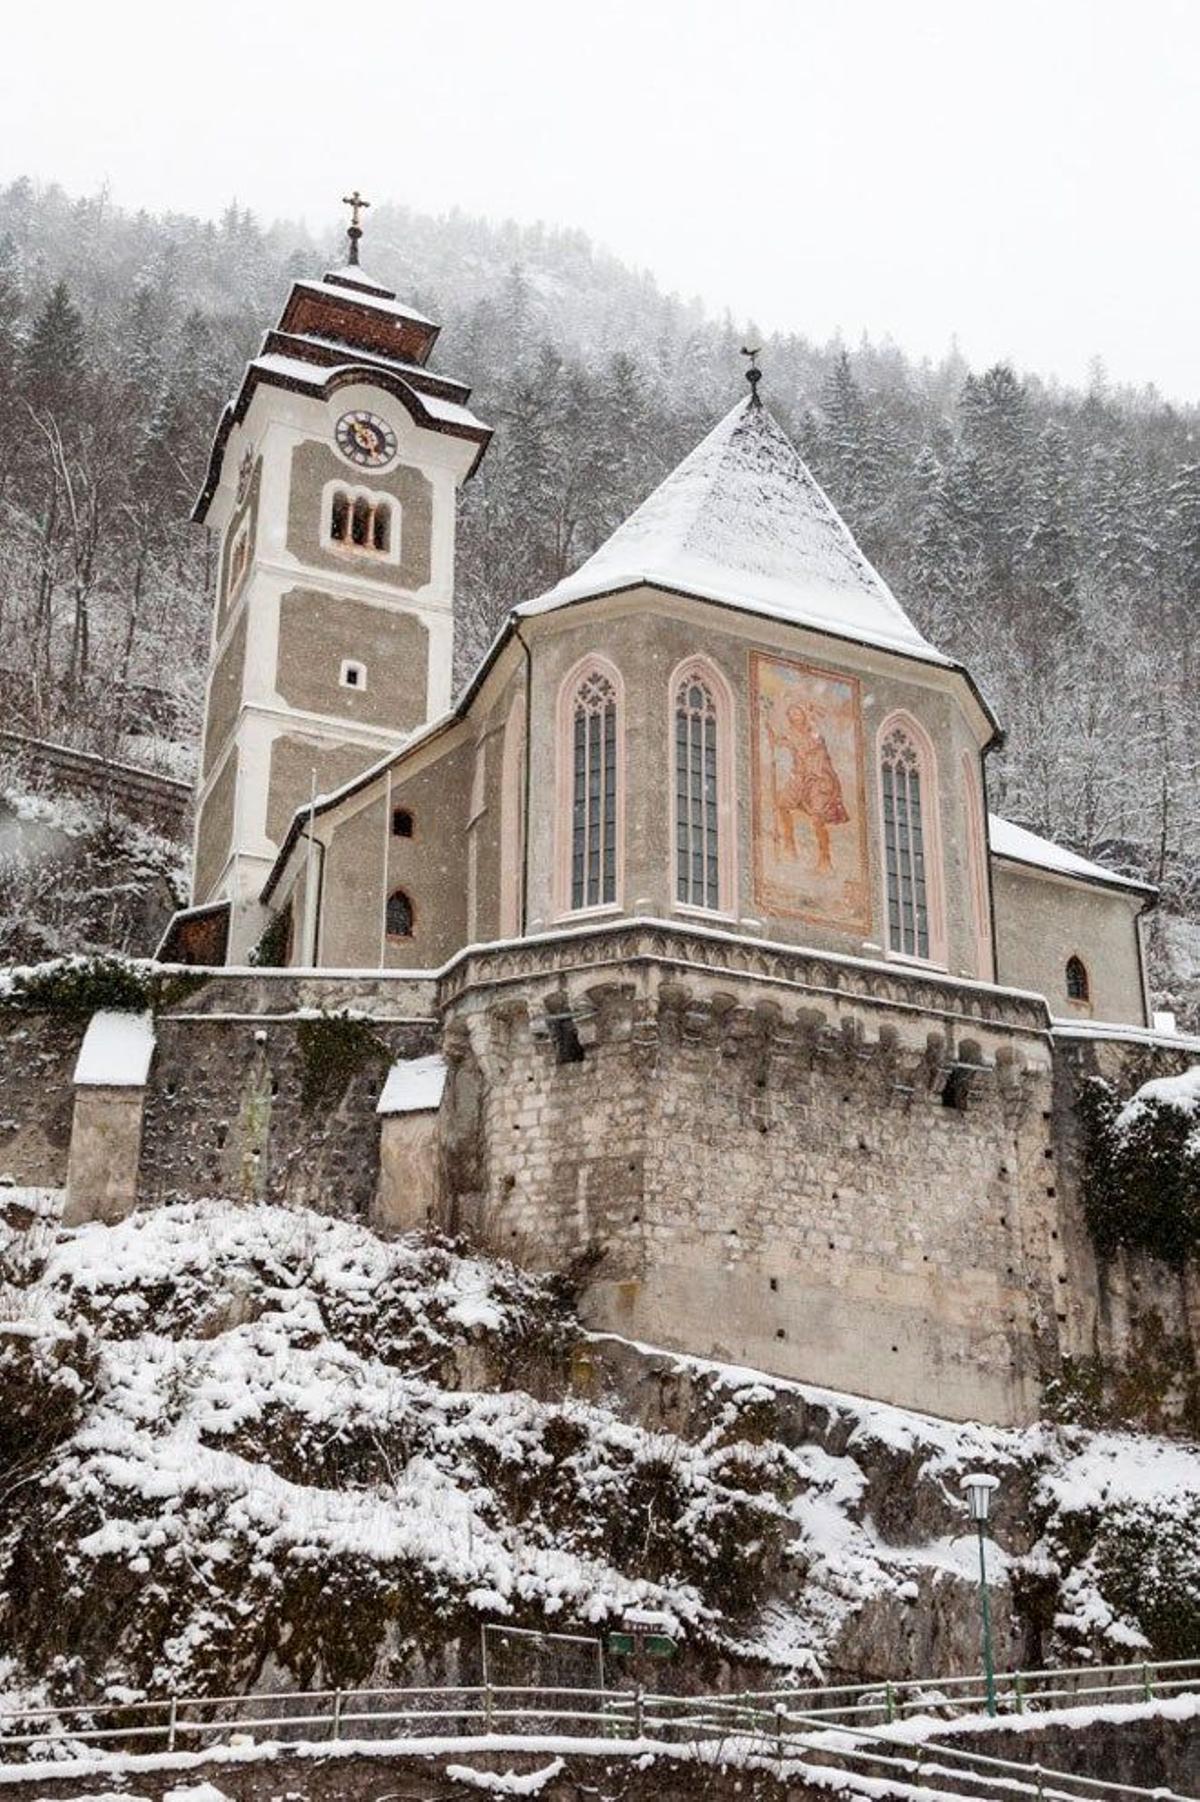 En inviero, la nieve realza aún más la belleza de la iglesia católica de Pfarrkirche.